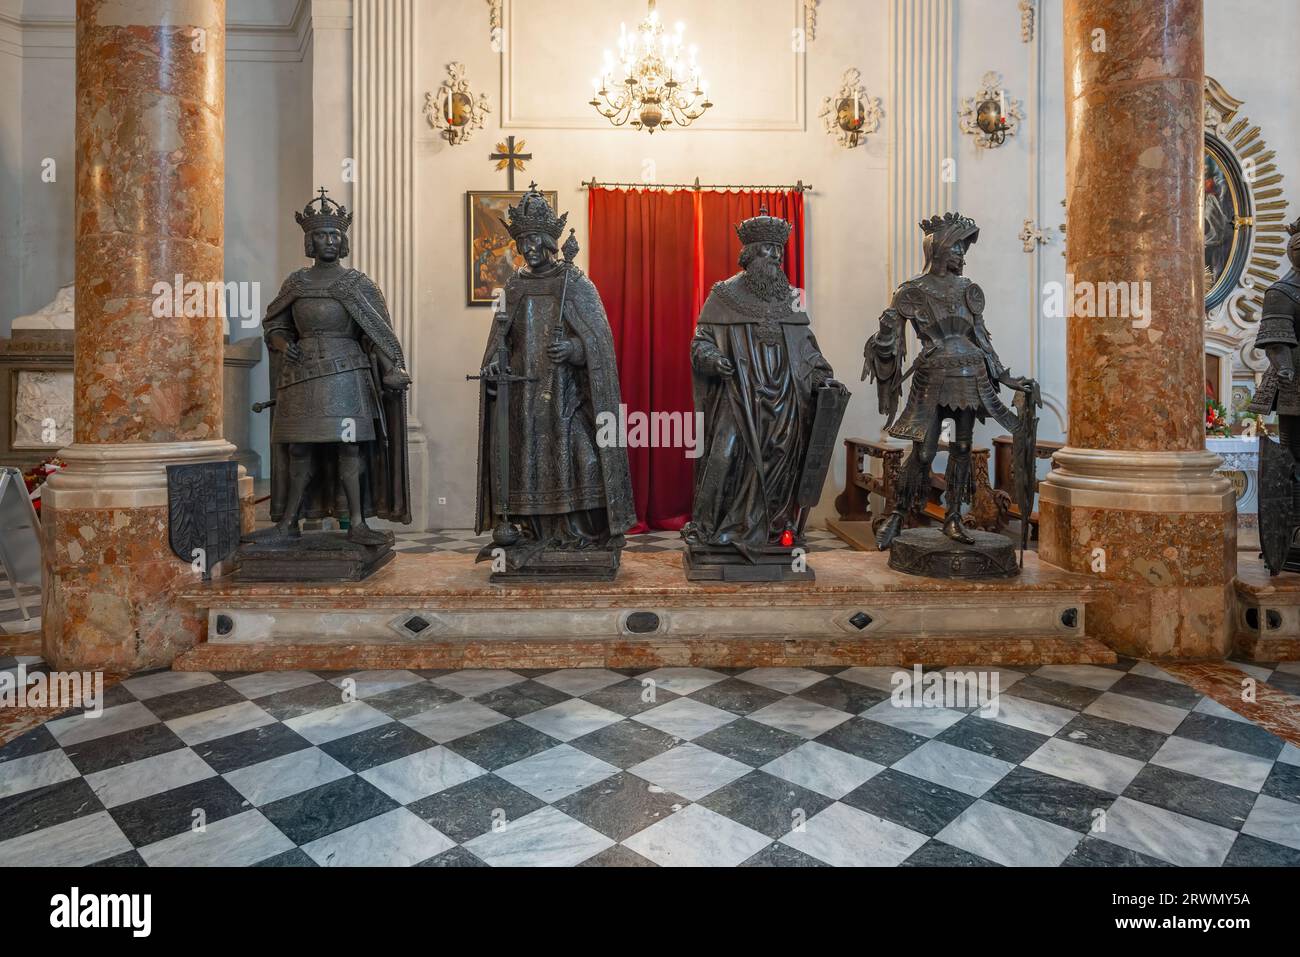 Statues du roi Albert II, de l'empereur Frédéric III, du margrave Léopold III et du comte Albert IV à Hofkirche (église de la cour) - Innsbruck, Autriche Banque D'Images